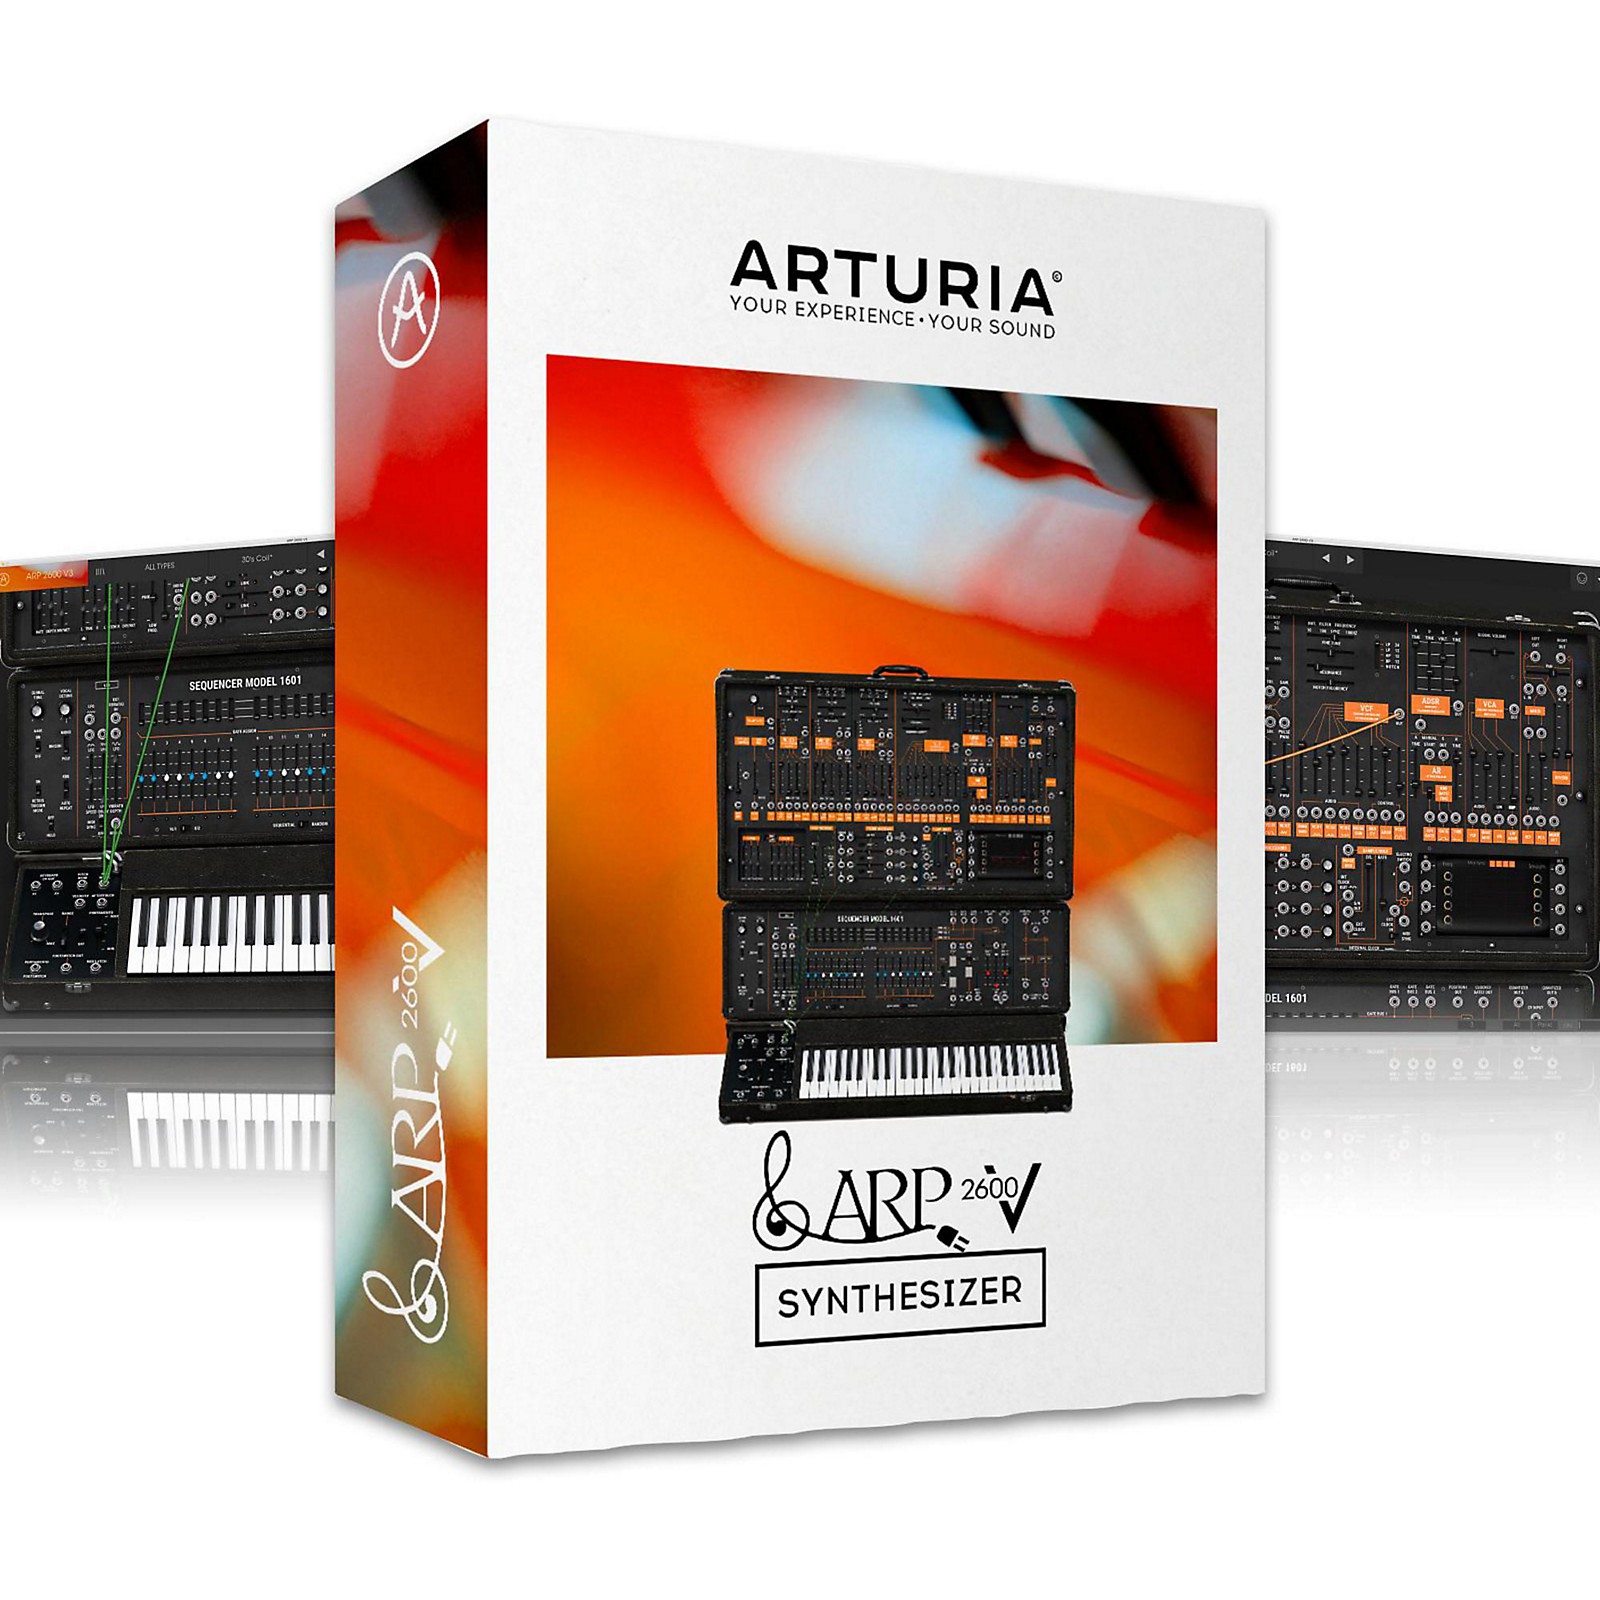 Arturia ARP 2600 V free downloads